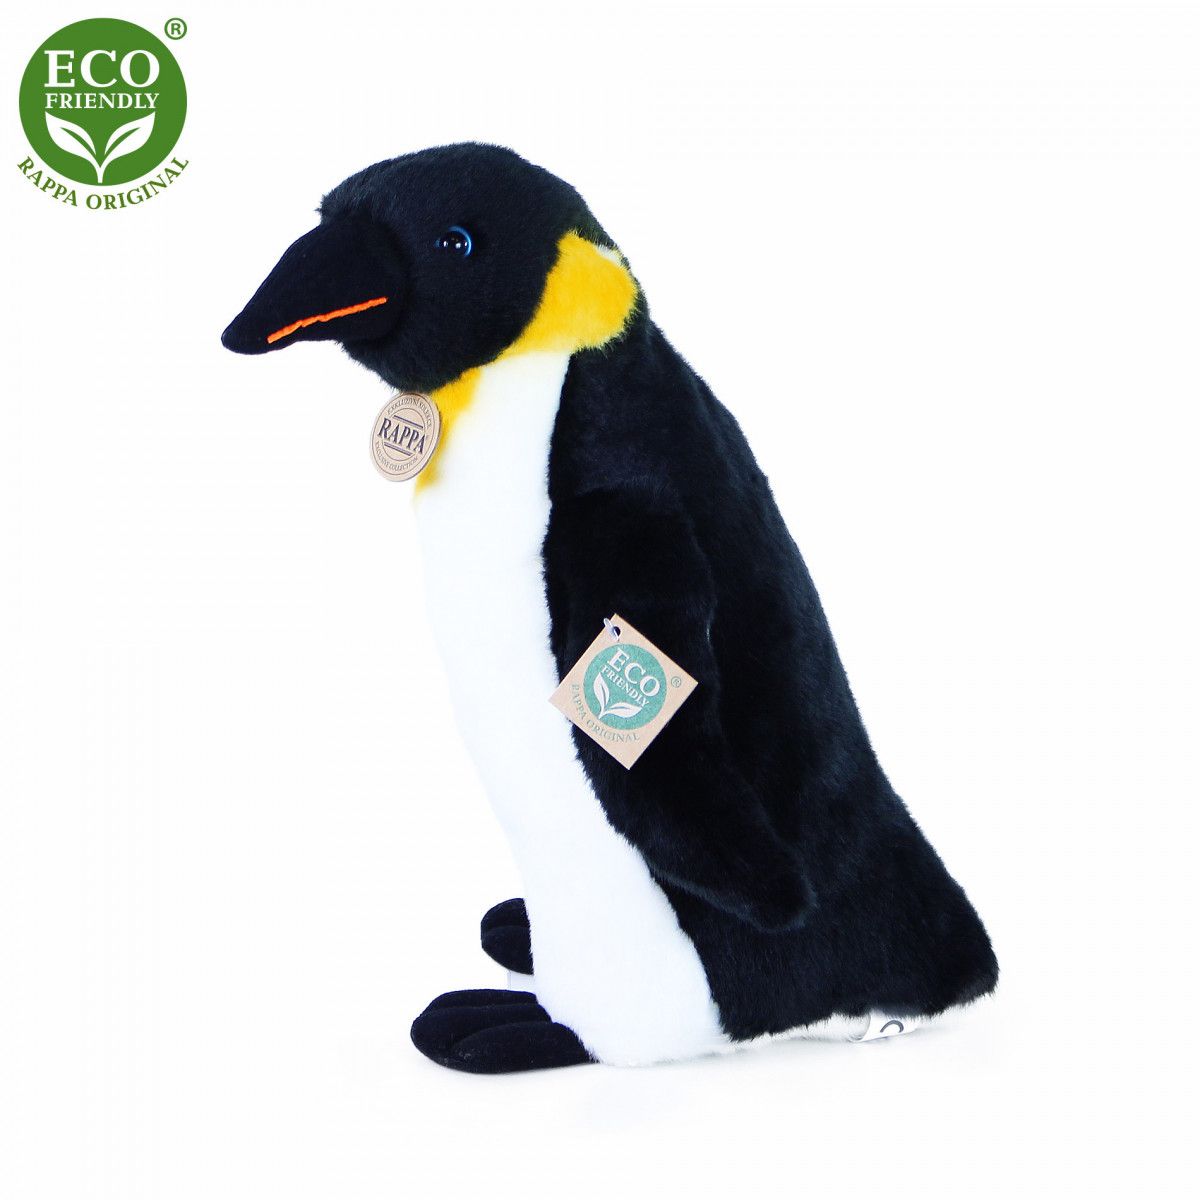 Dřevěné hračky Rappa Plyšový tučňák 30 cm ECO-FRIENDLY